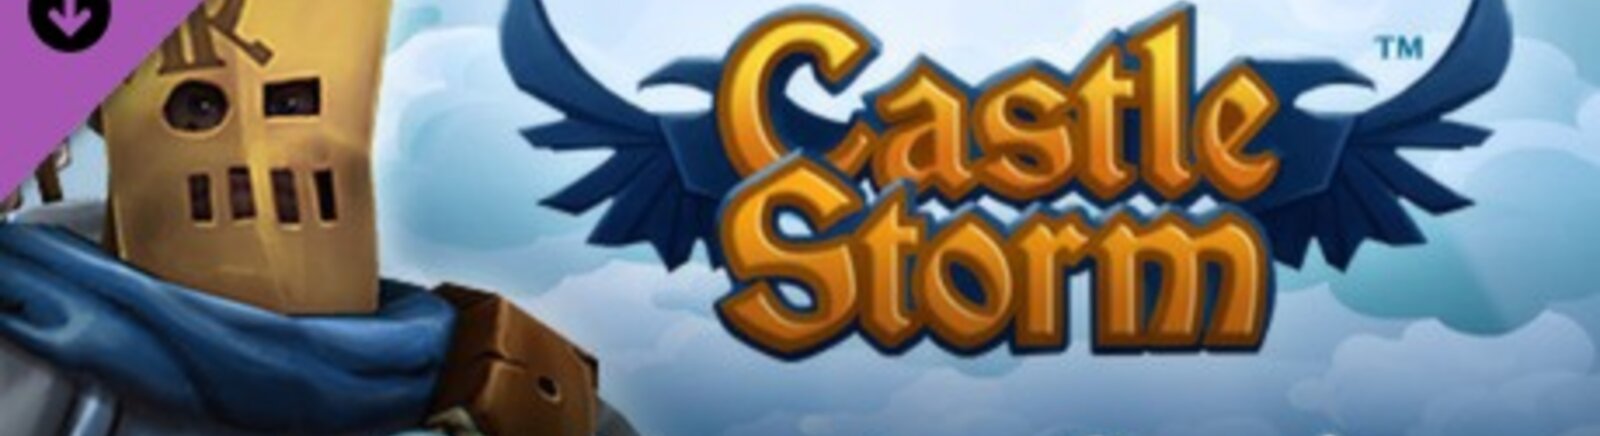 Дата выхода CastleStorm: From Outcast to Savior  на PC и Xbox 360 в России и во всем мире